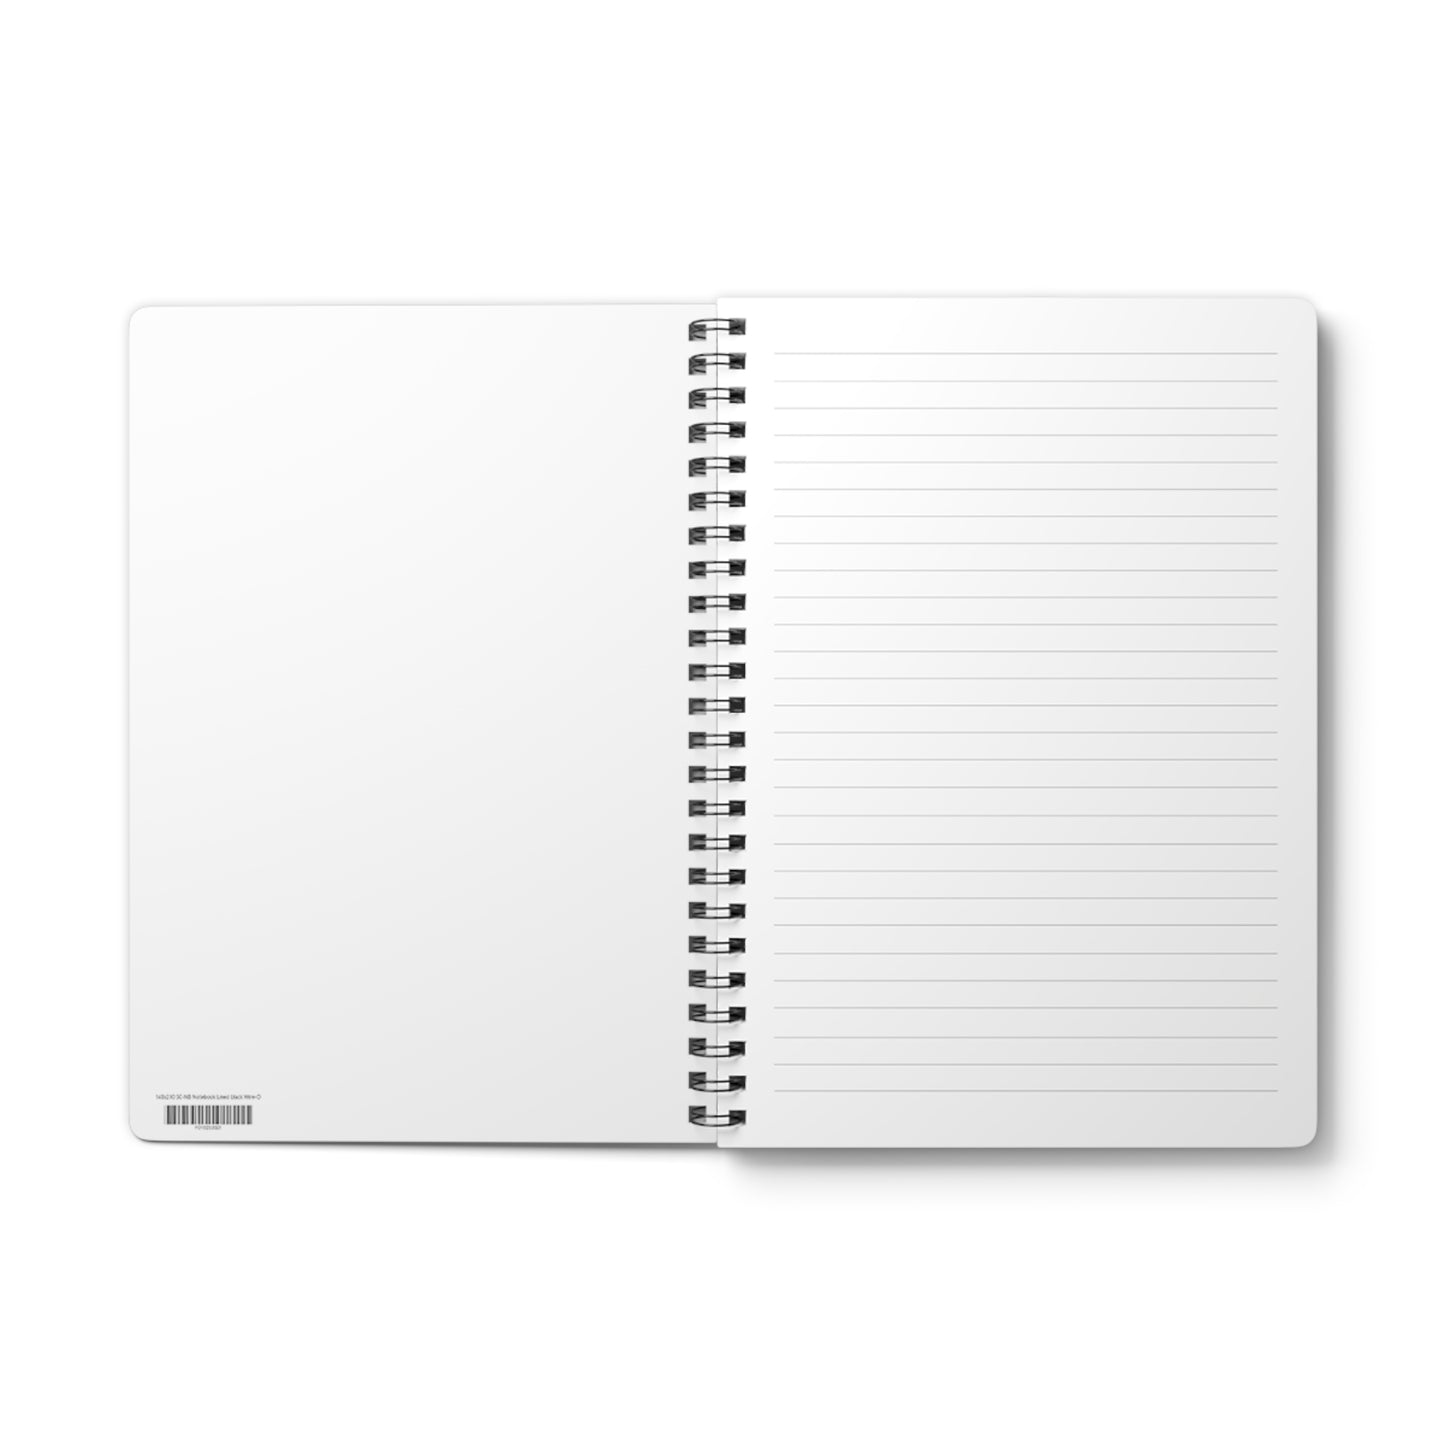 Adonias Low - A5 Wirebound Notebook